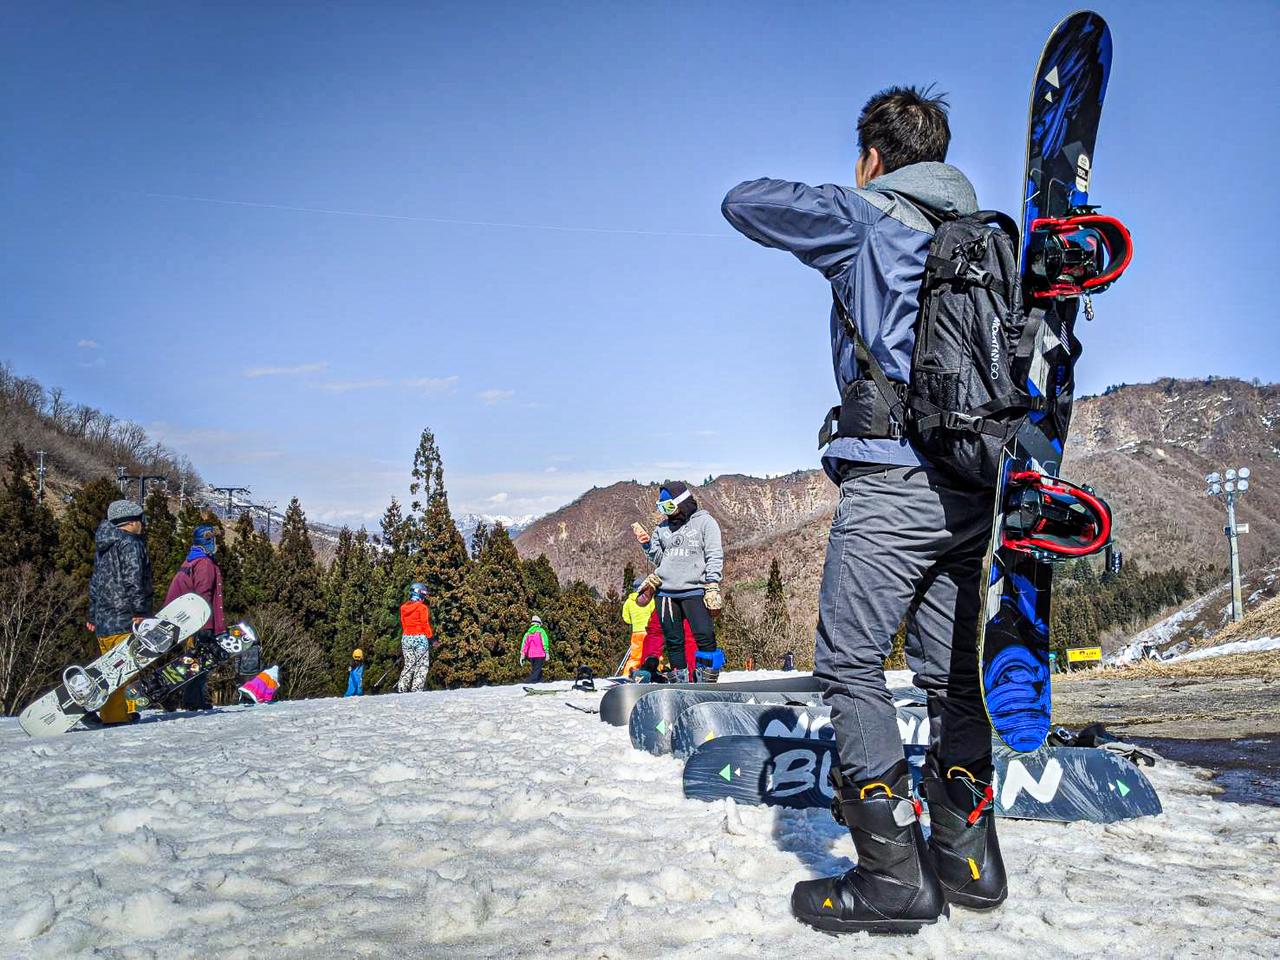 スノーボードの板も運べるバックパック｢ラドパック2.0｣をスキー場で使ってみた